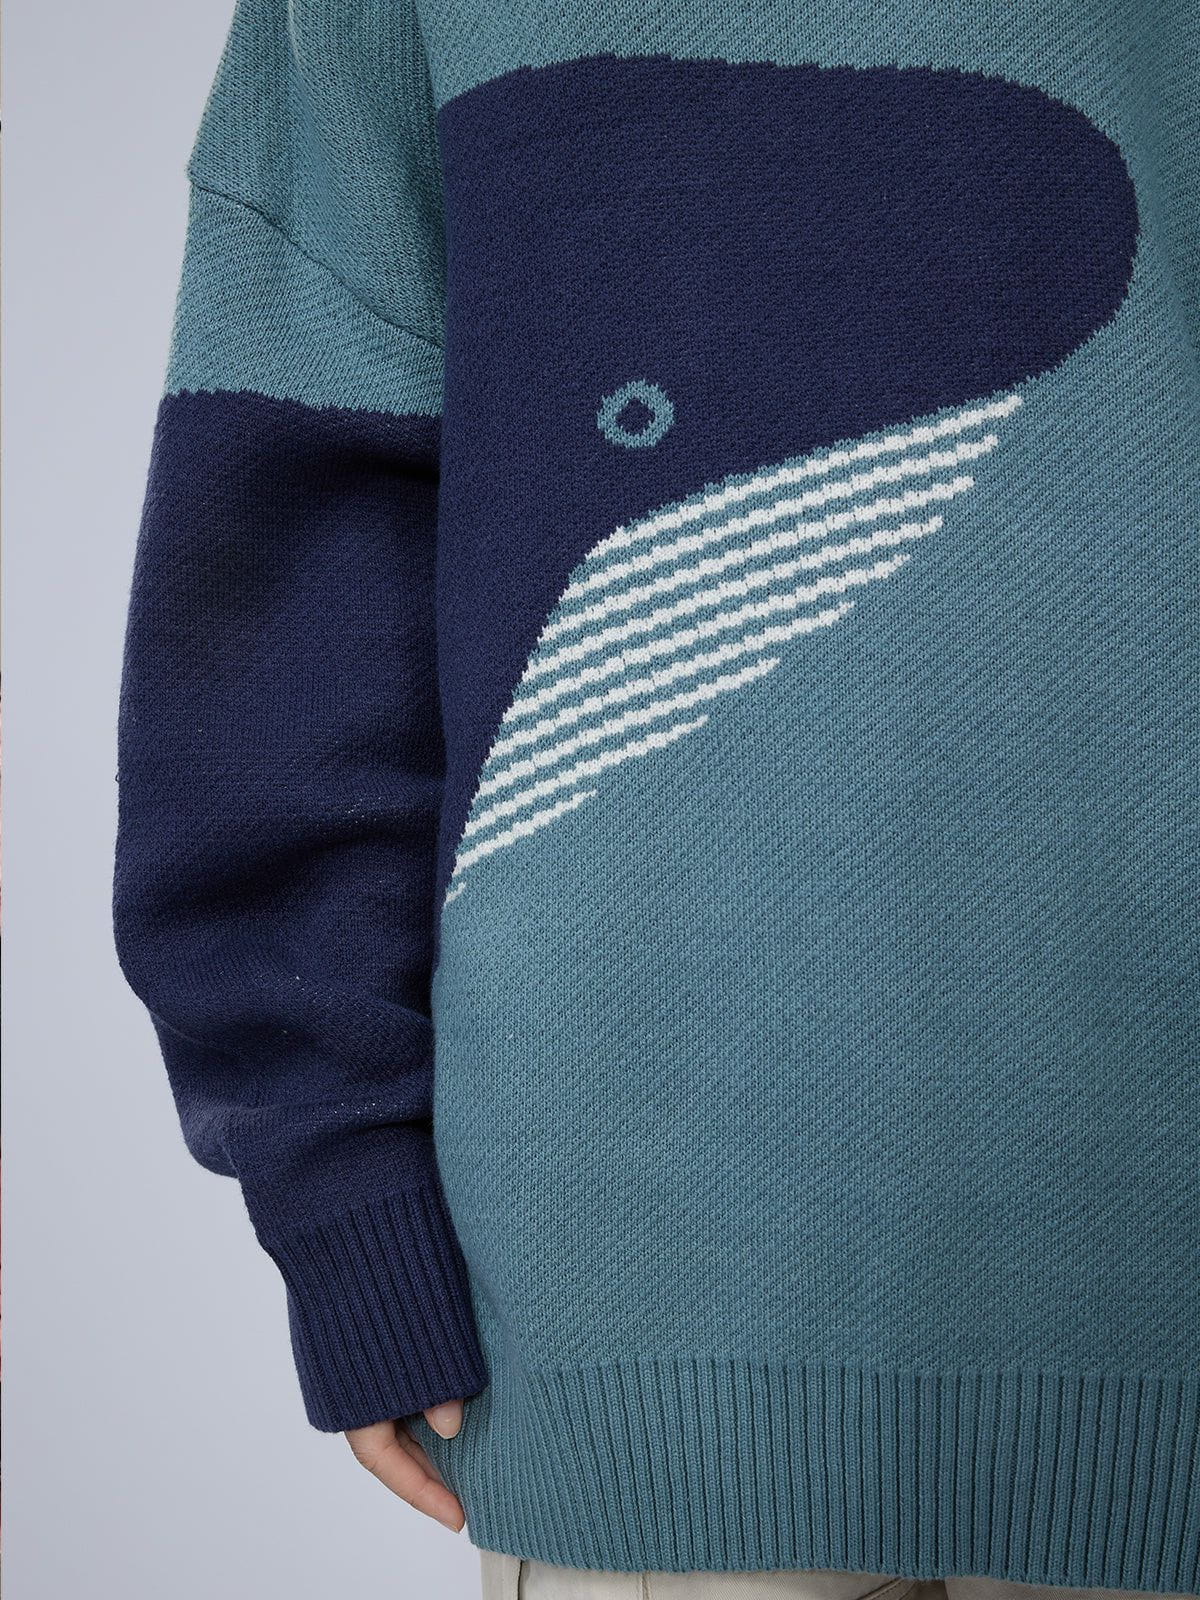 Eprezzy® - "The Loneliest Whale" Knit Sweater Streetwear Fashion - eprezzy.com